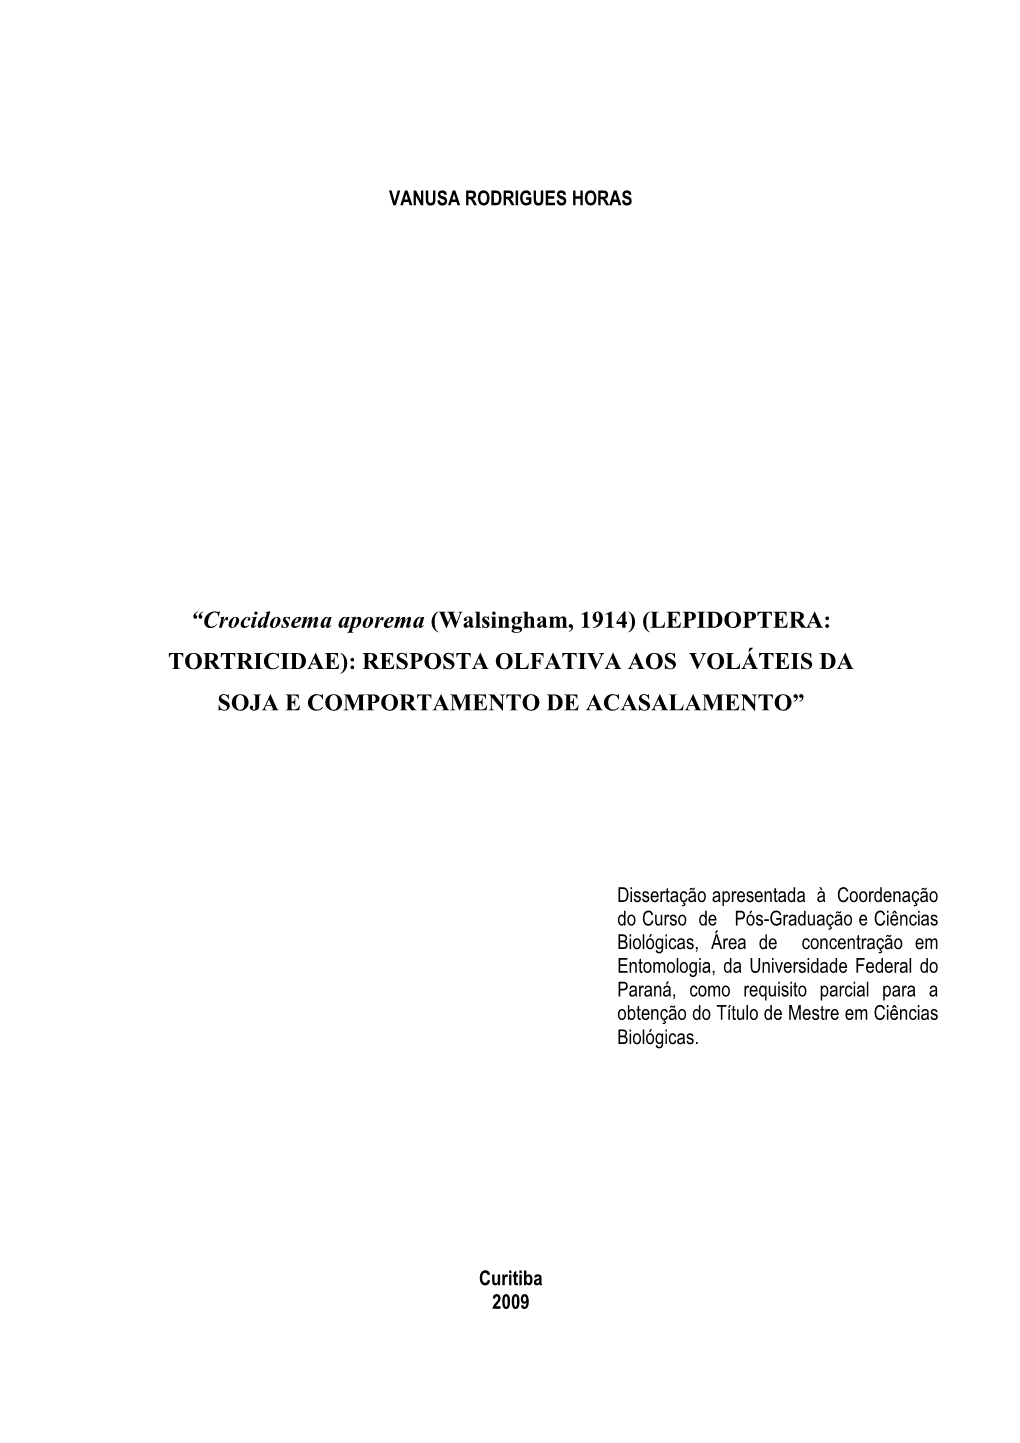 Crocidosema Aporema (Walsingham, 1914) (LEPIDOPTERA: TORTRICIDAE): RESPOSTA OLFATIVA AOS VOLÁTEIS DA SOJA E COMPORTAMENTO DE ACASALAMENTO”